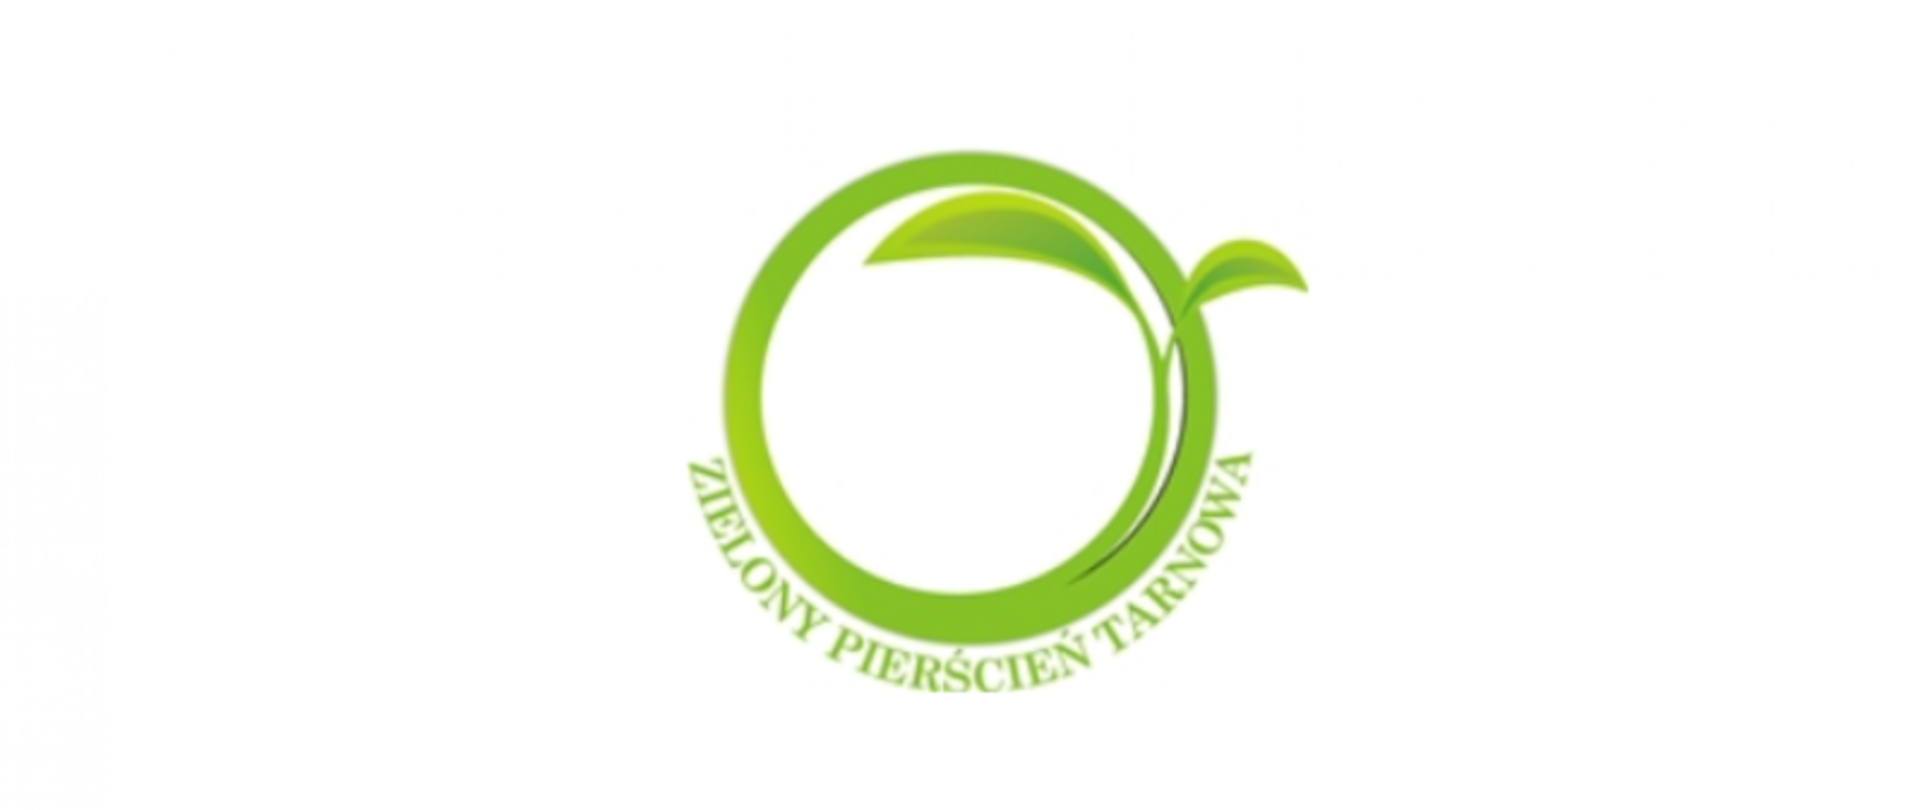 zdjęcie przedstawia logo Zielonego Pierścienia Tarnowa